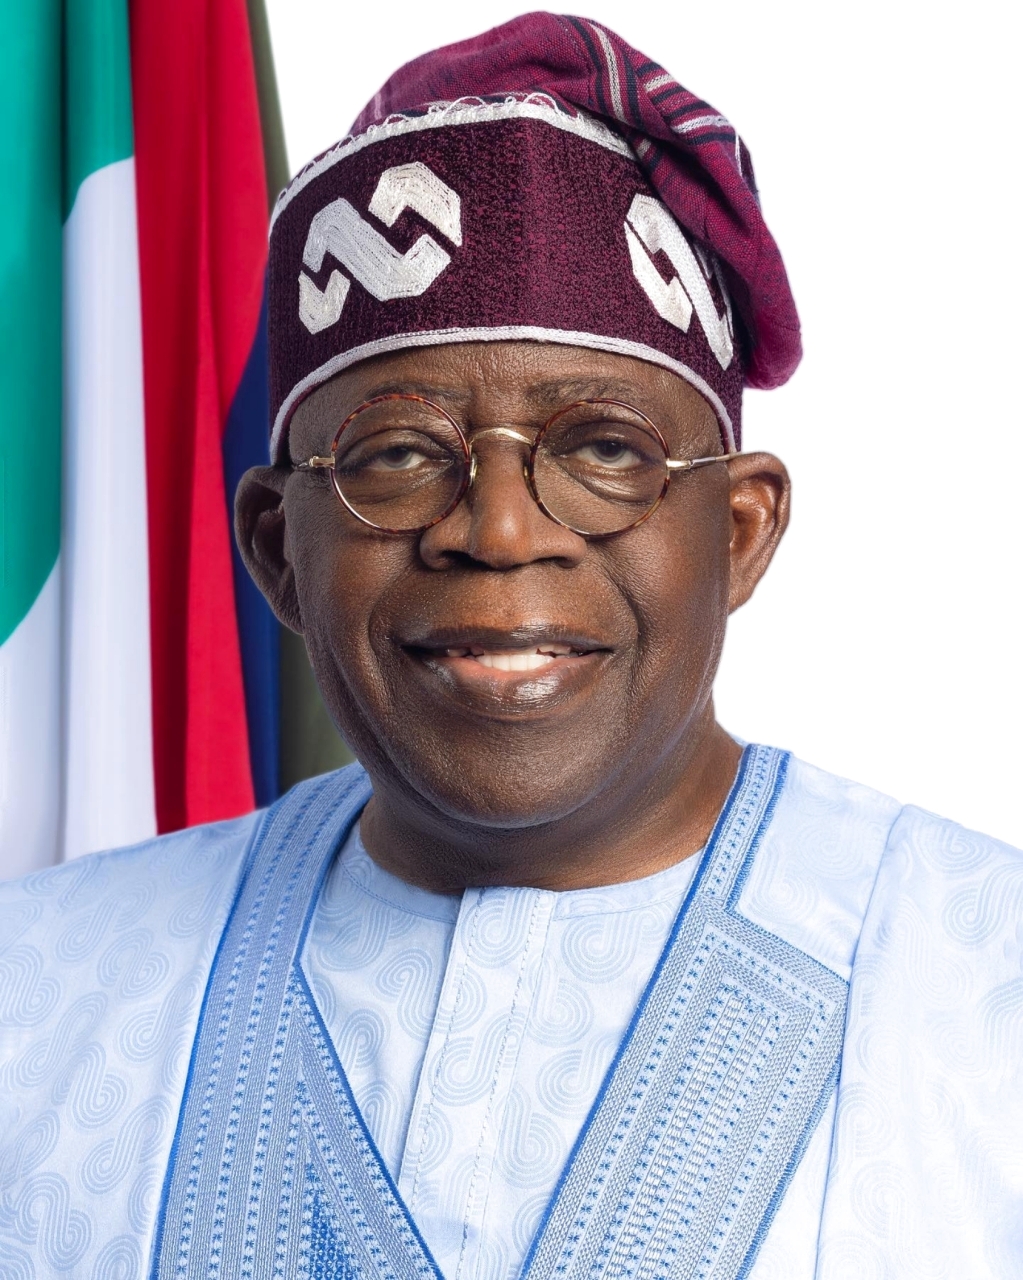 الصورة : 2023 فوز بولا تينوبو في الانتخابات الرئاسية النيجيرية ليصبح الرئيس 16 لجمهورية نيجيريا الاتحادية.